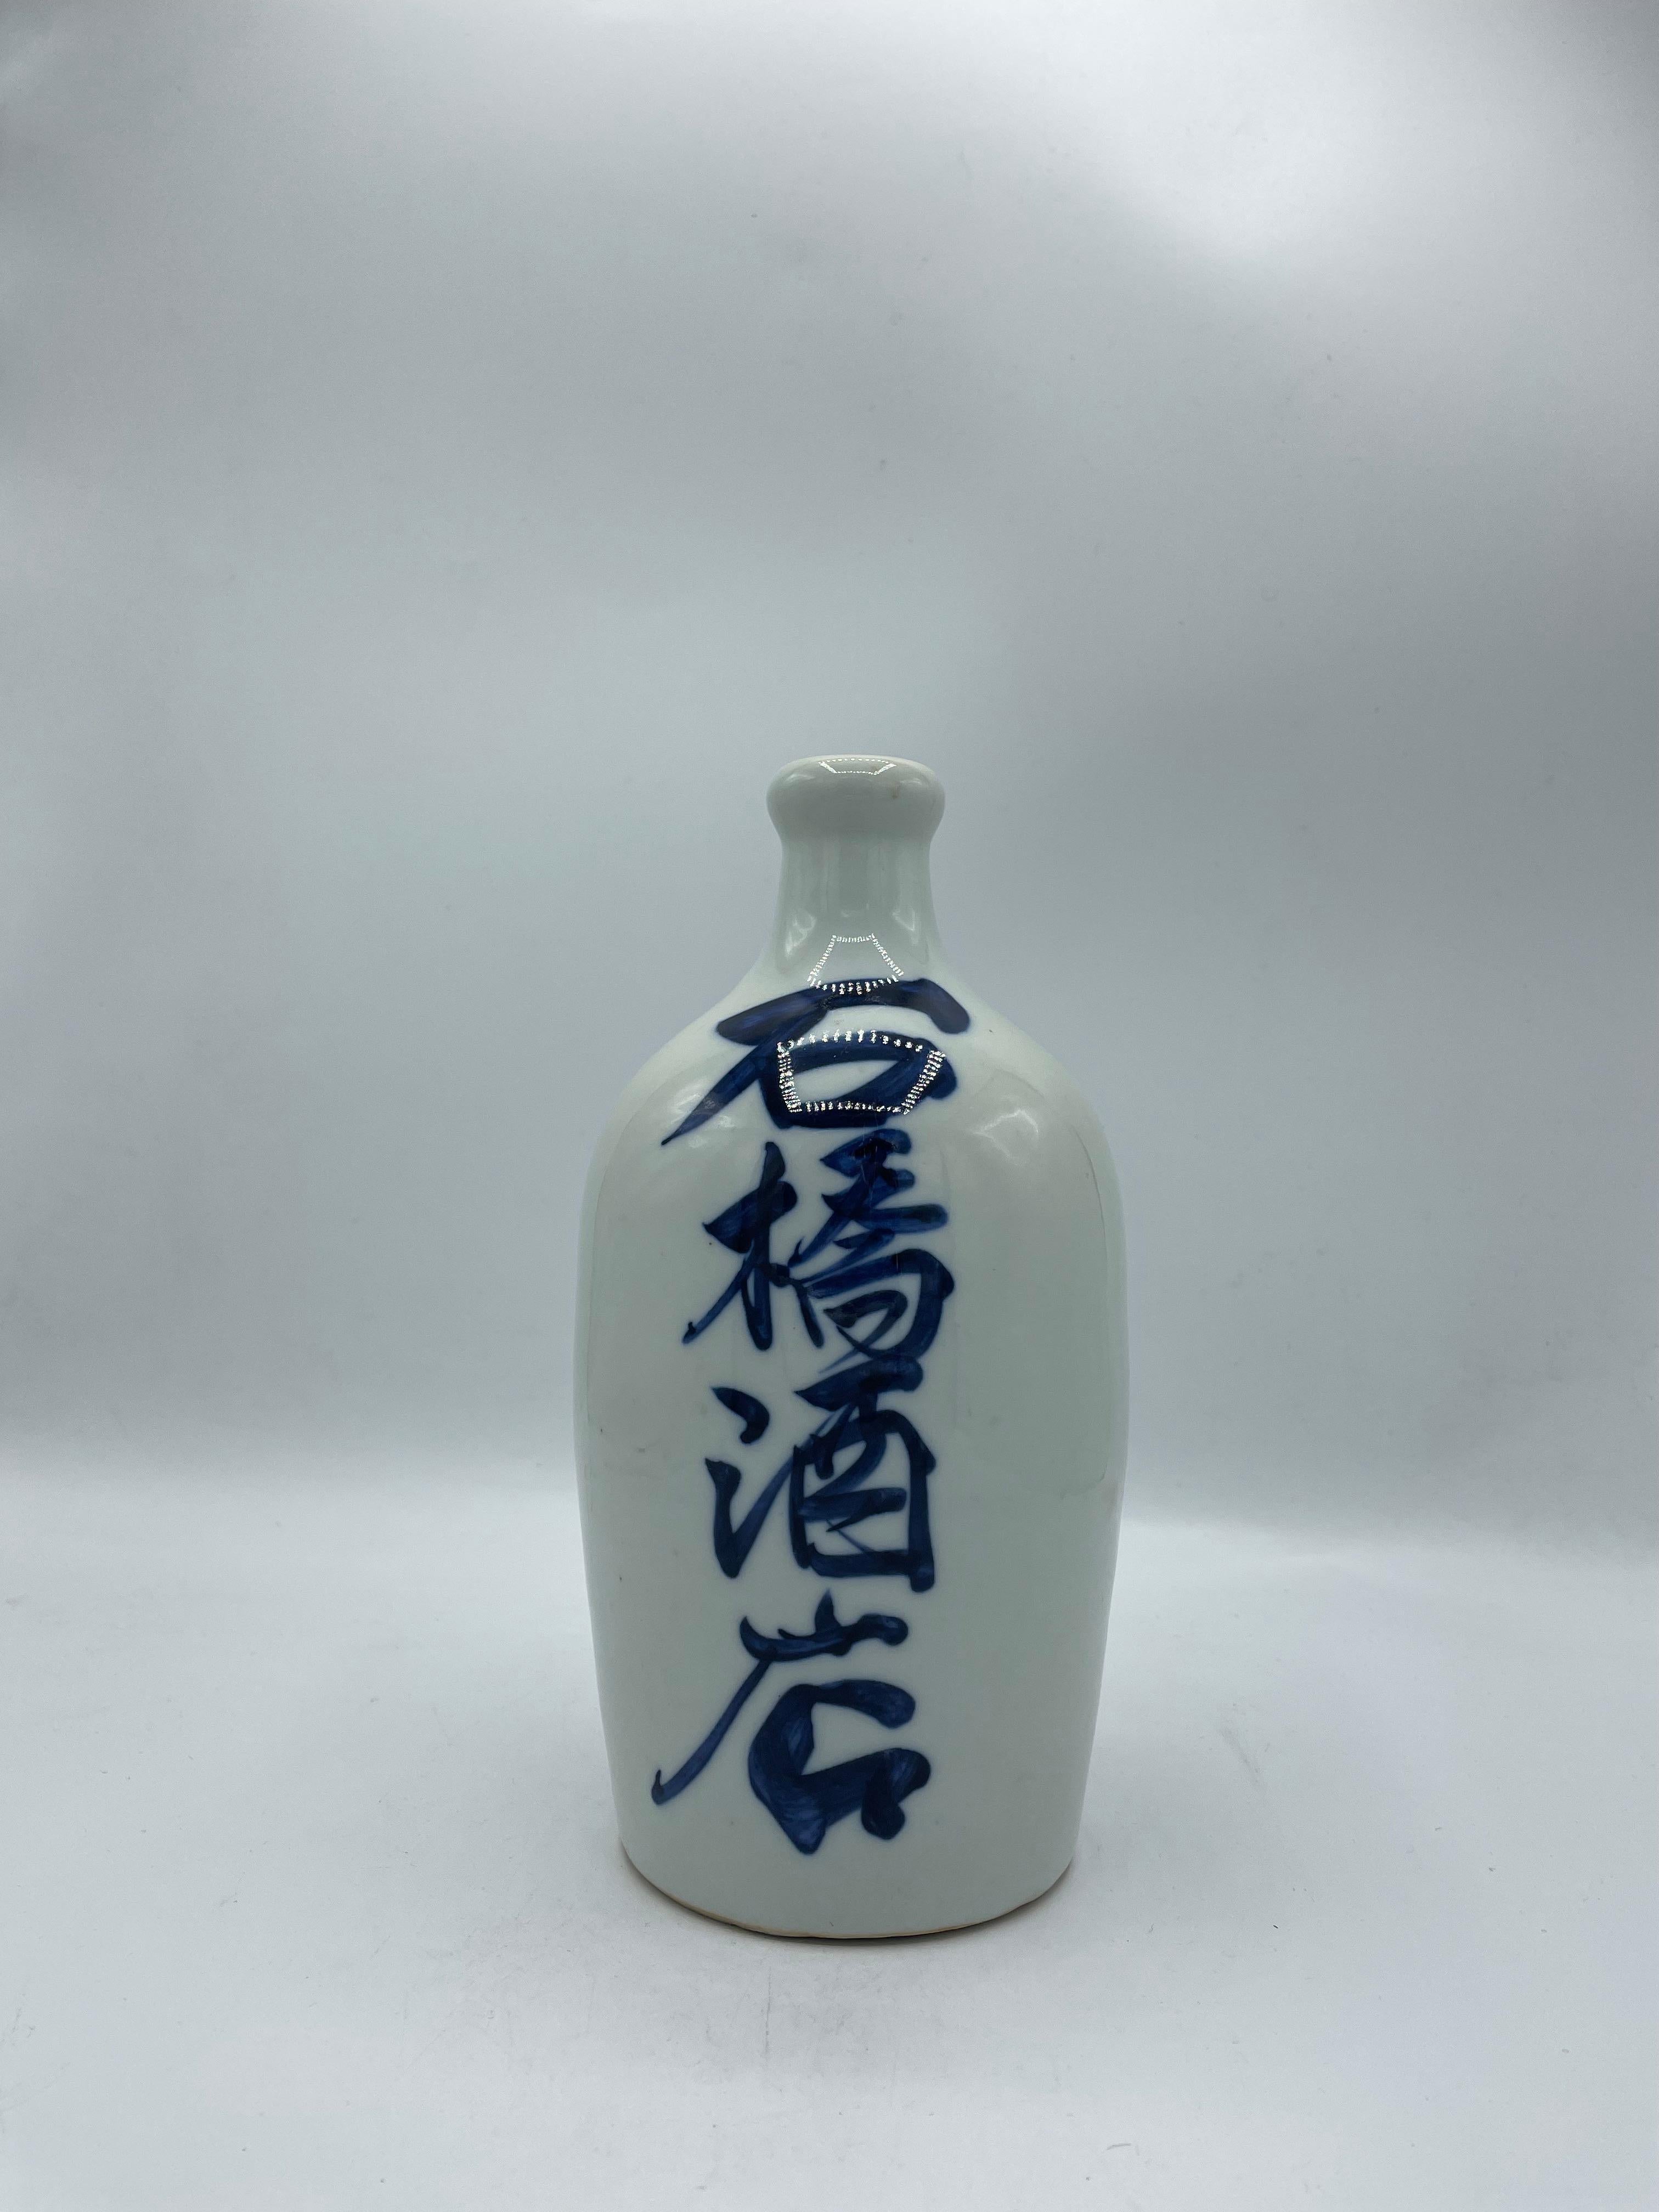 Hand-Painted Japanese Antique Sake Bottle 'Fukumusume' 1960s Showa era  For Sale